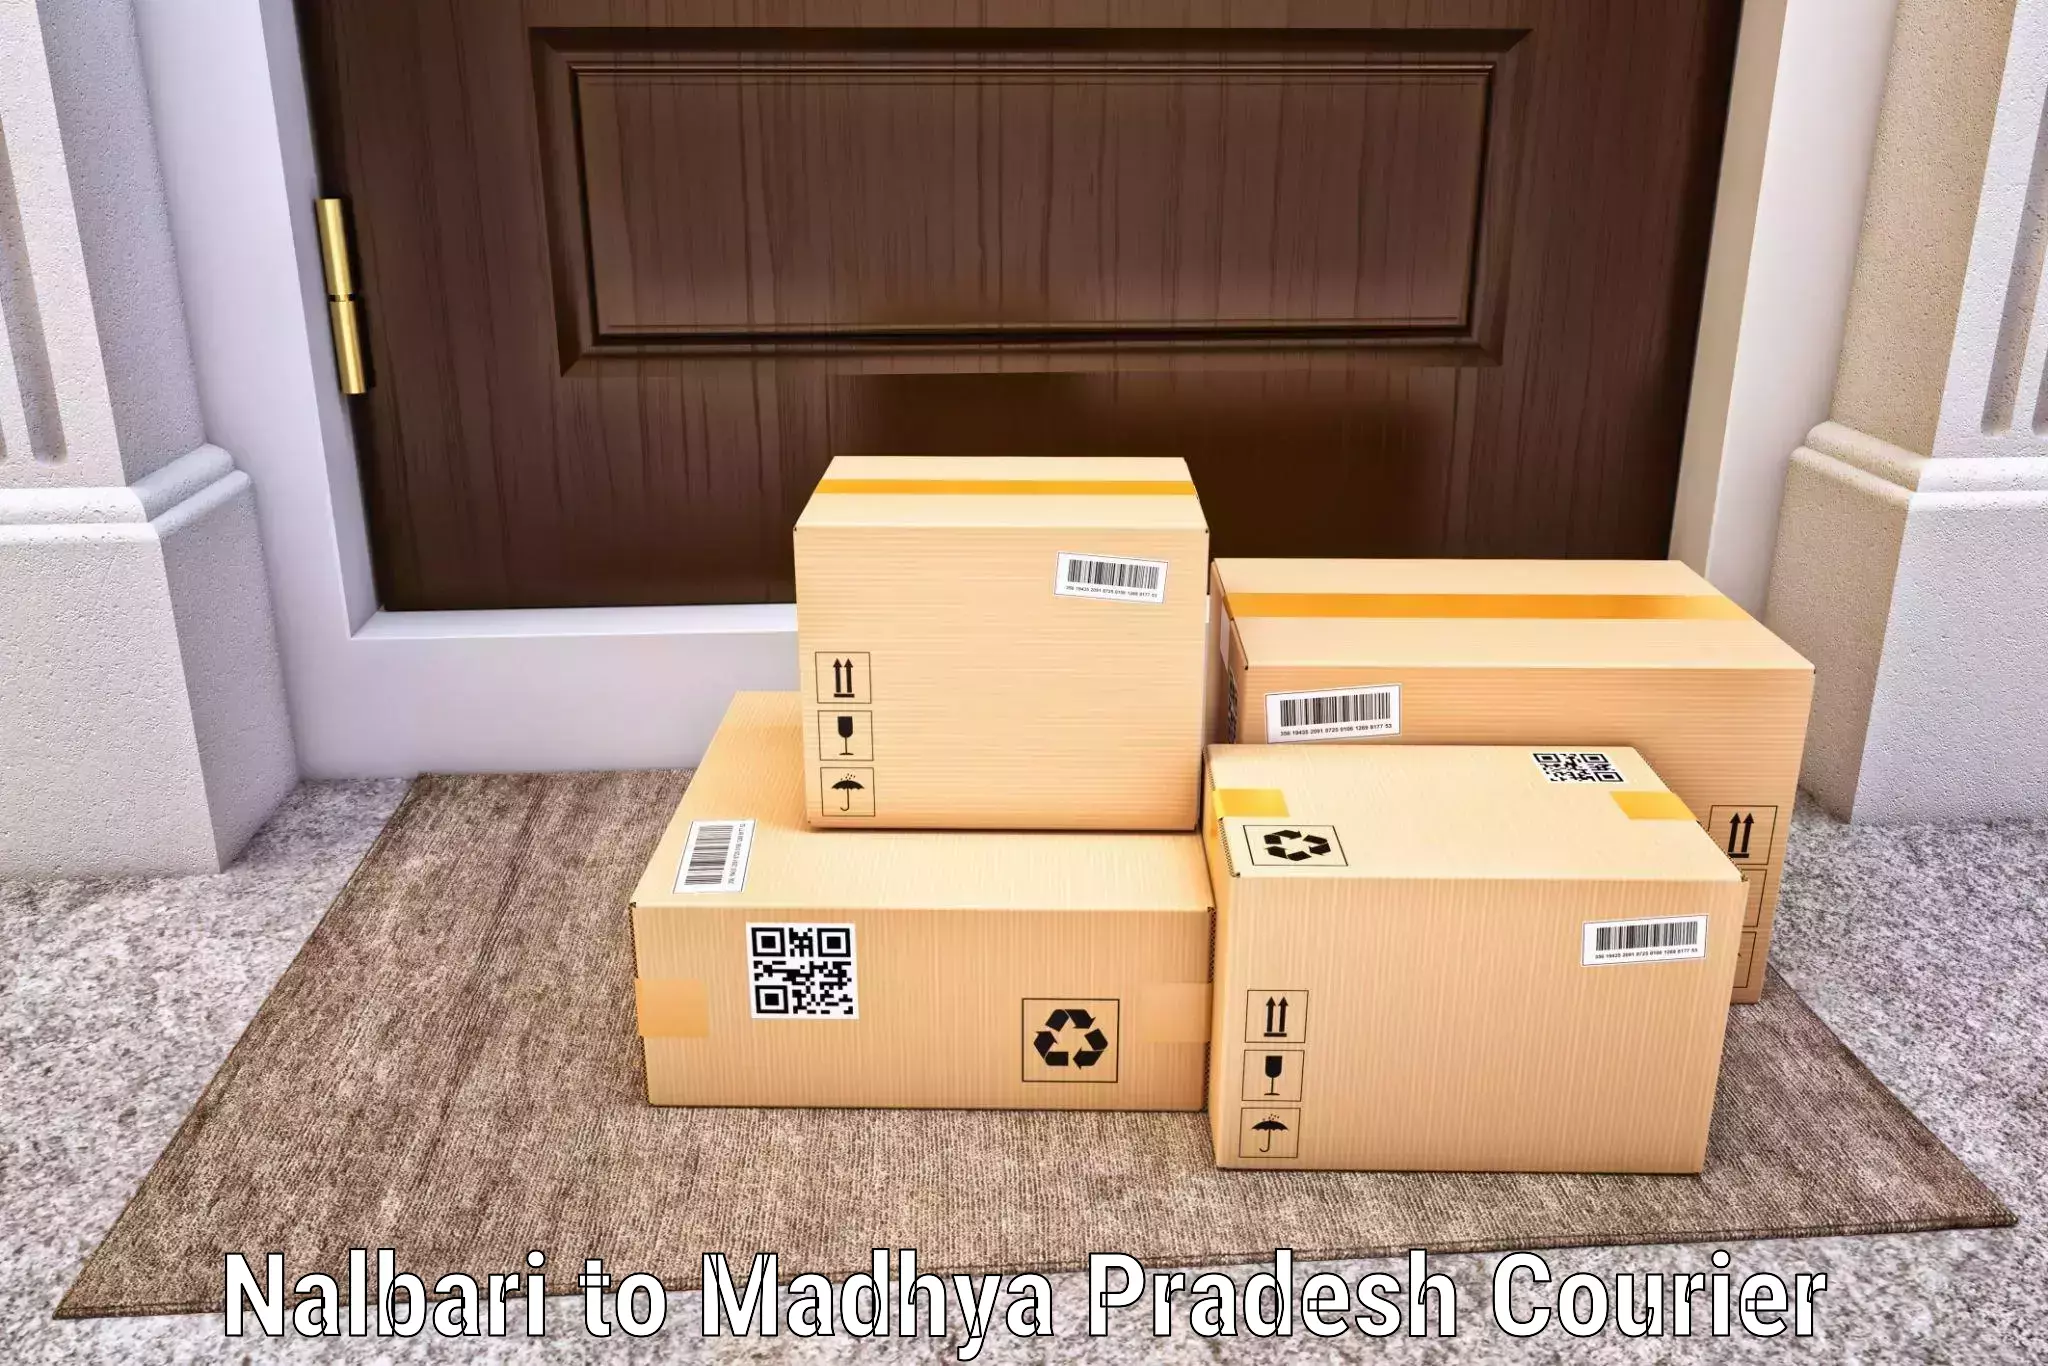 Multi-service courier options Nalbari to Madhya Pradesh